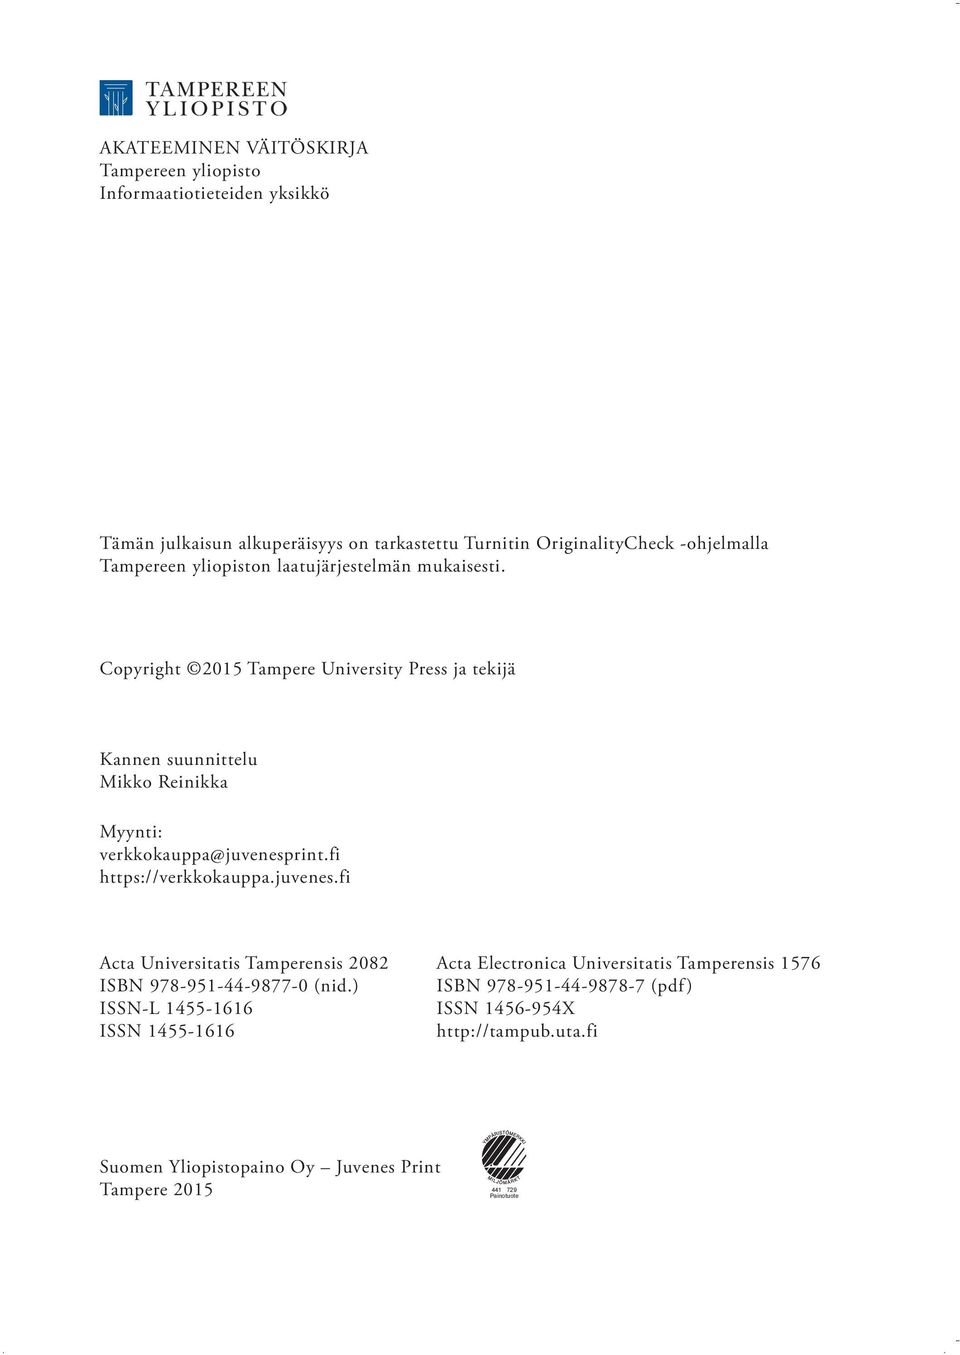 Copyright 2015 Tampere University Press ja tekijä Kannen suunnittelu Mikko Reinikka Myynti: verkkokauppa@juvenesp